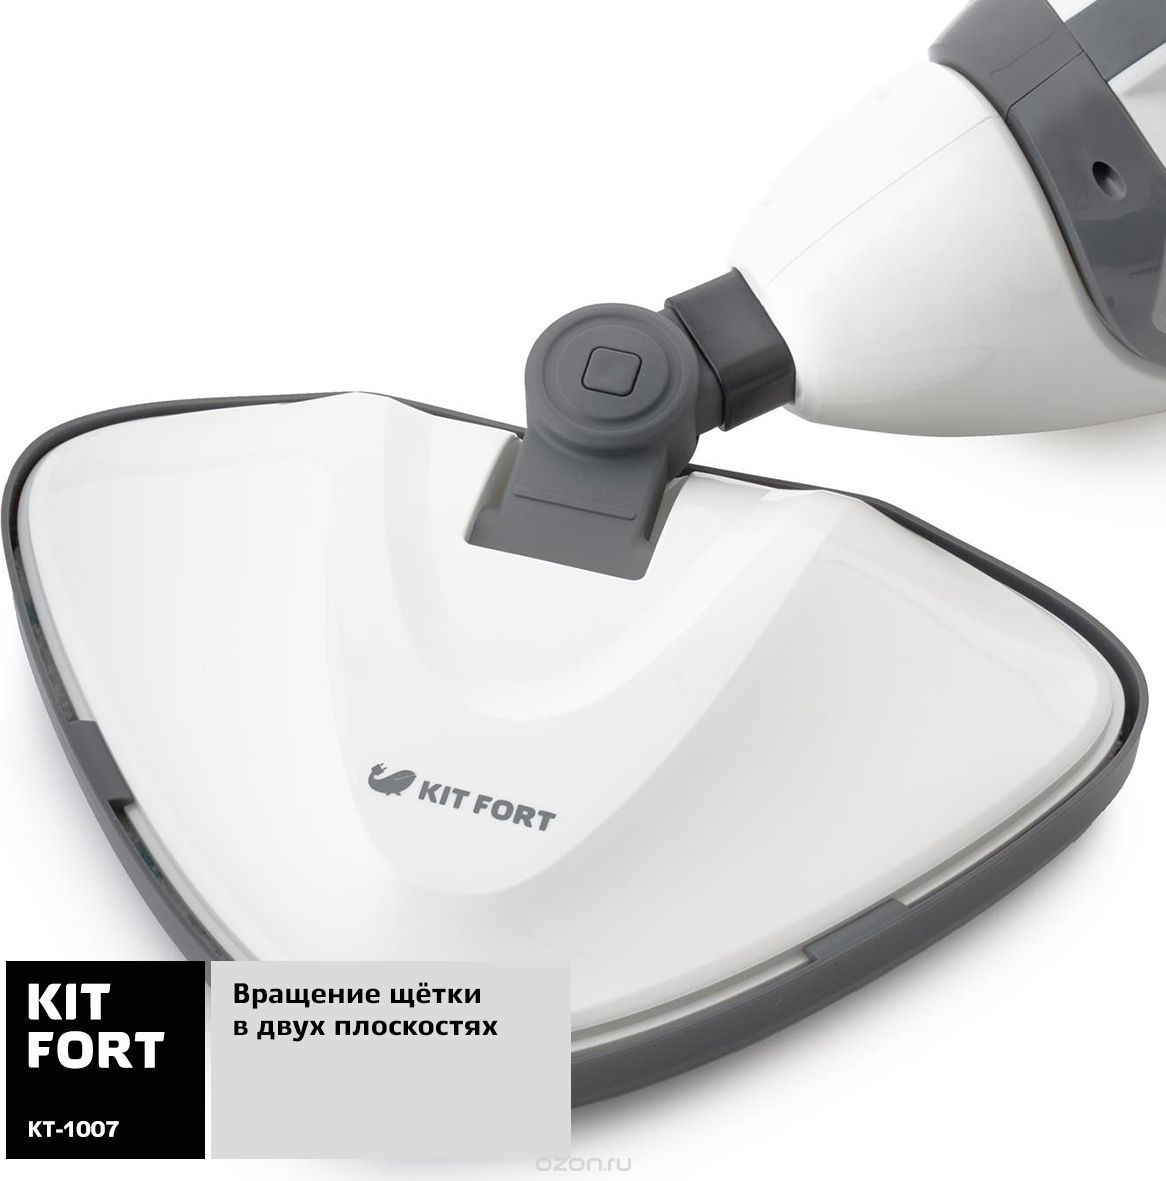  Kitfort -1007, White Gray